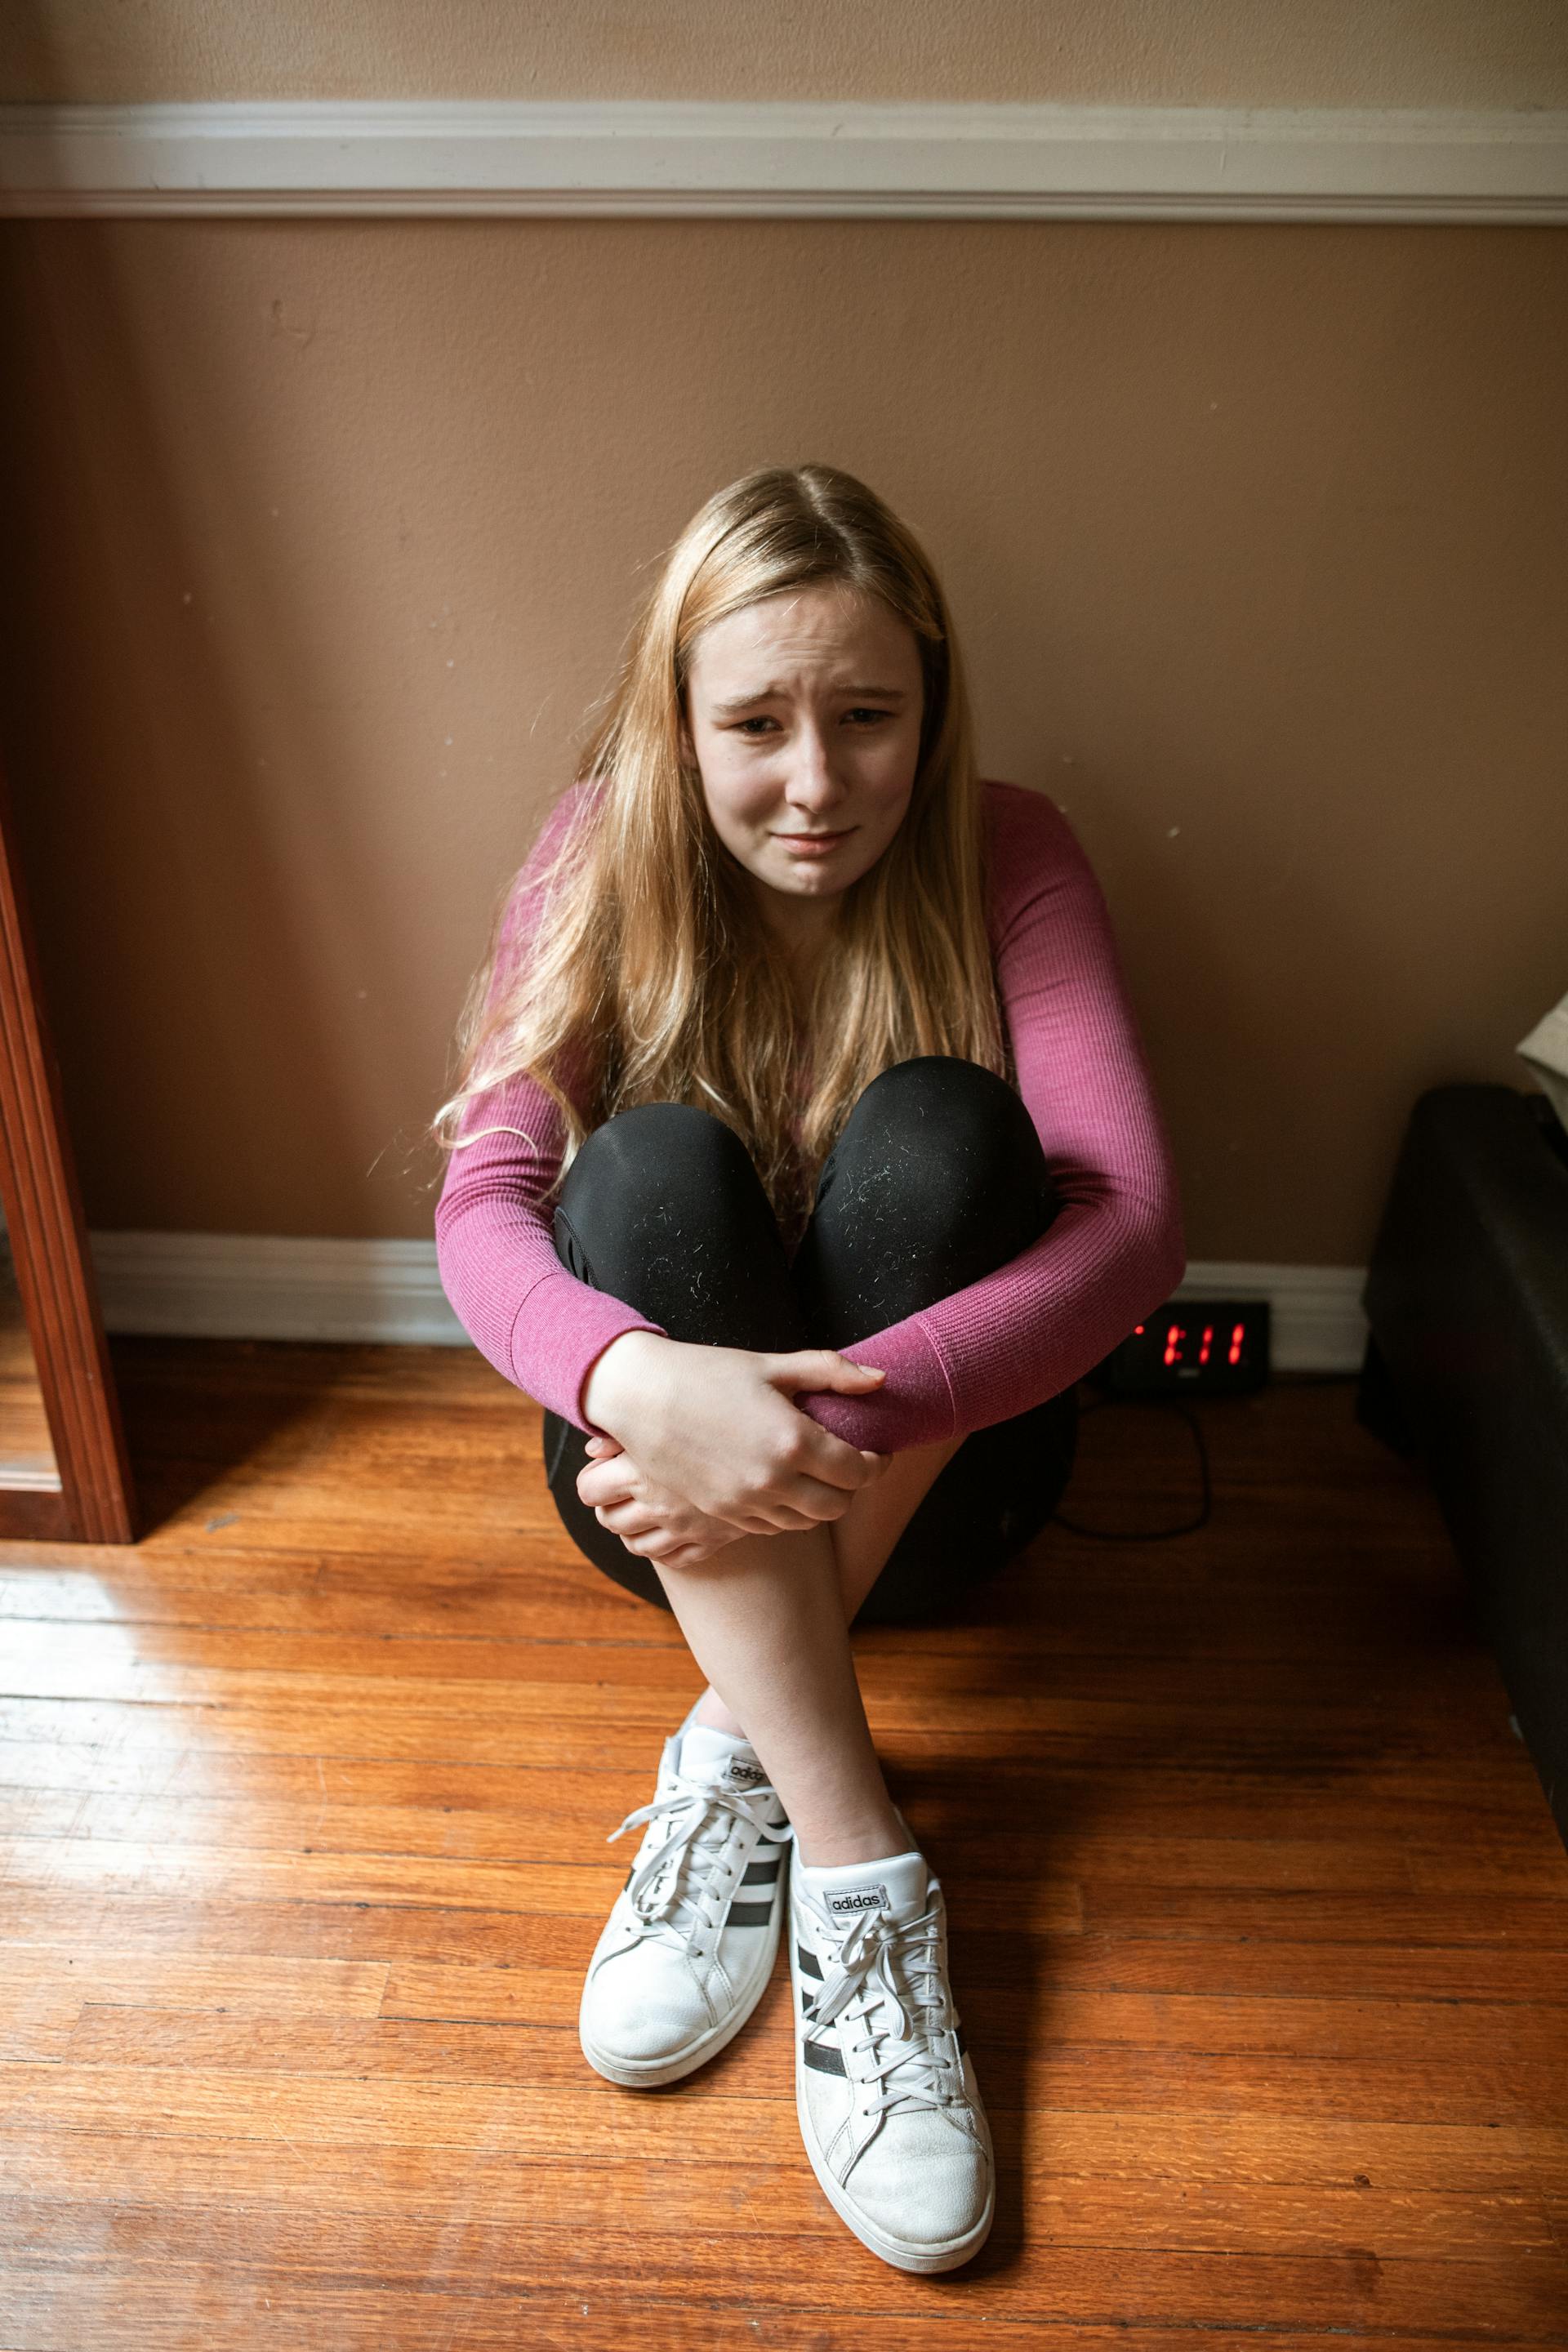 Ein Mädchen, das auf dem Boden sitzt und weint | Quelle: Pexels